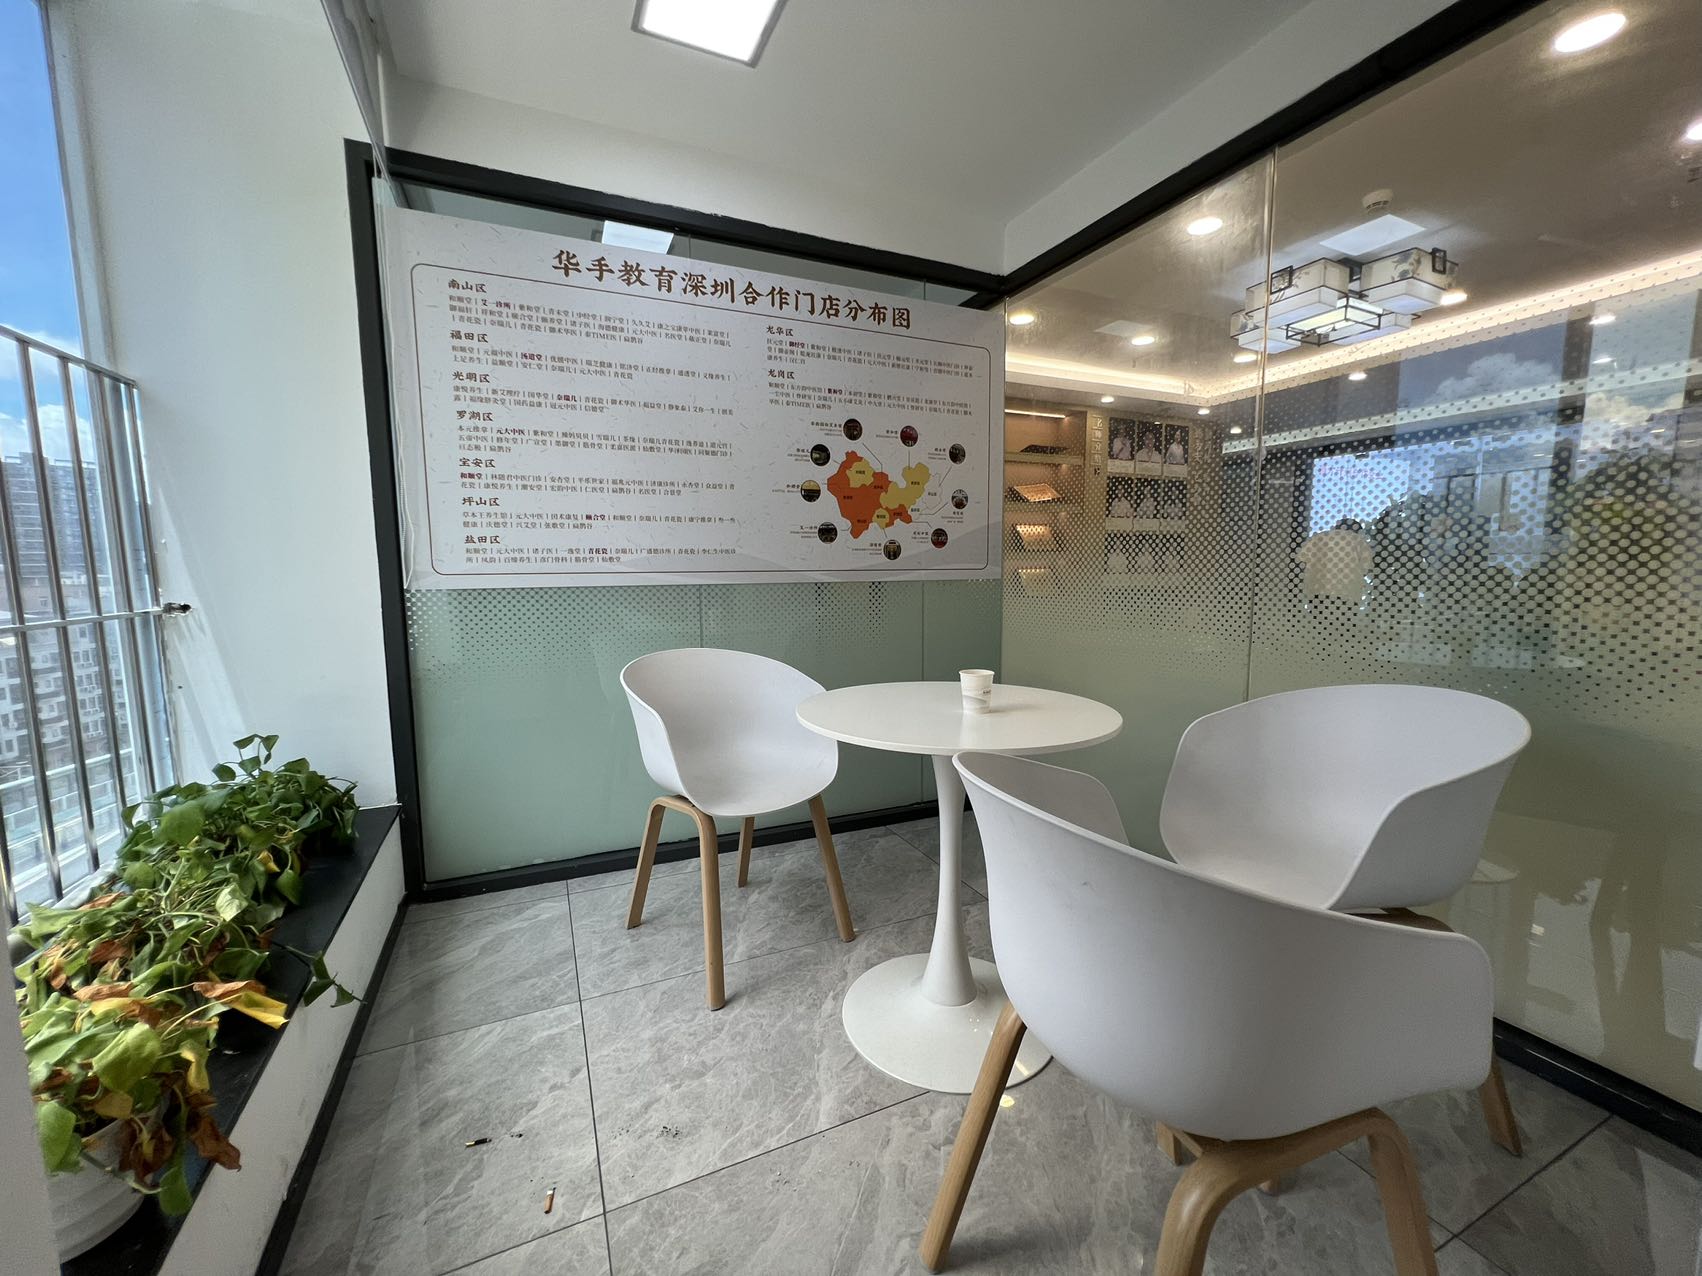 龙华清湖地铁站附近新出一套720平办公室